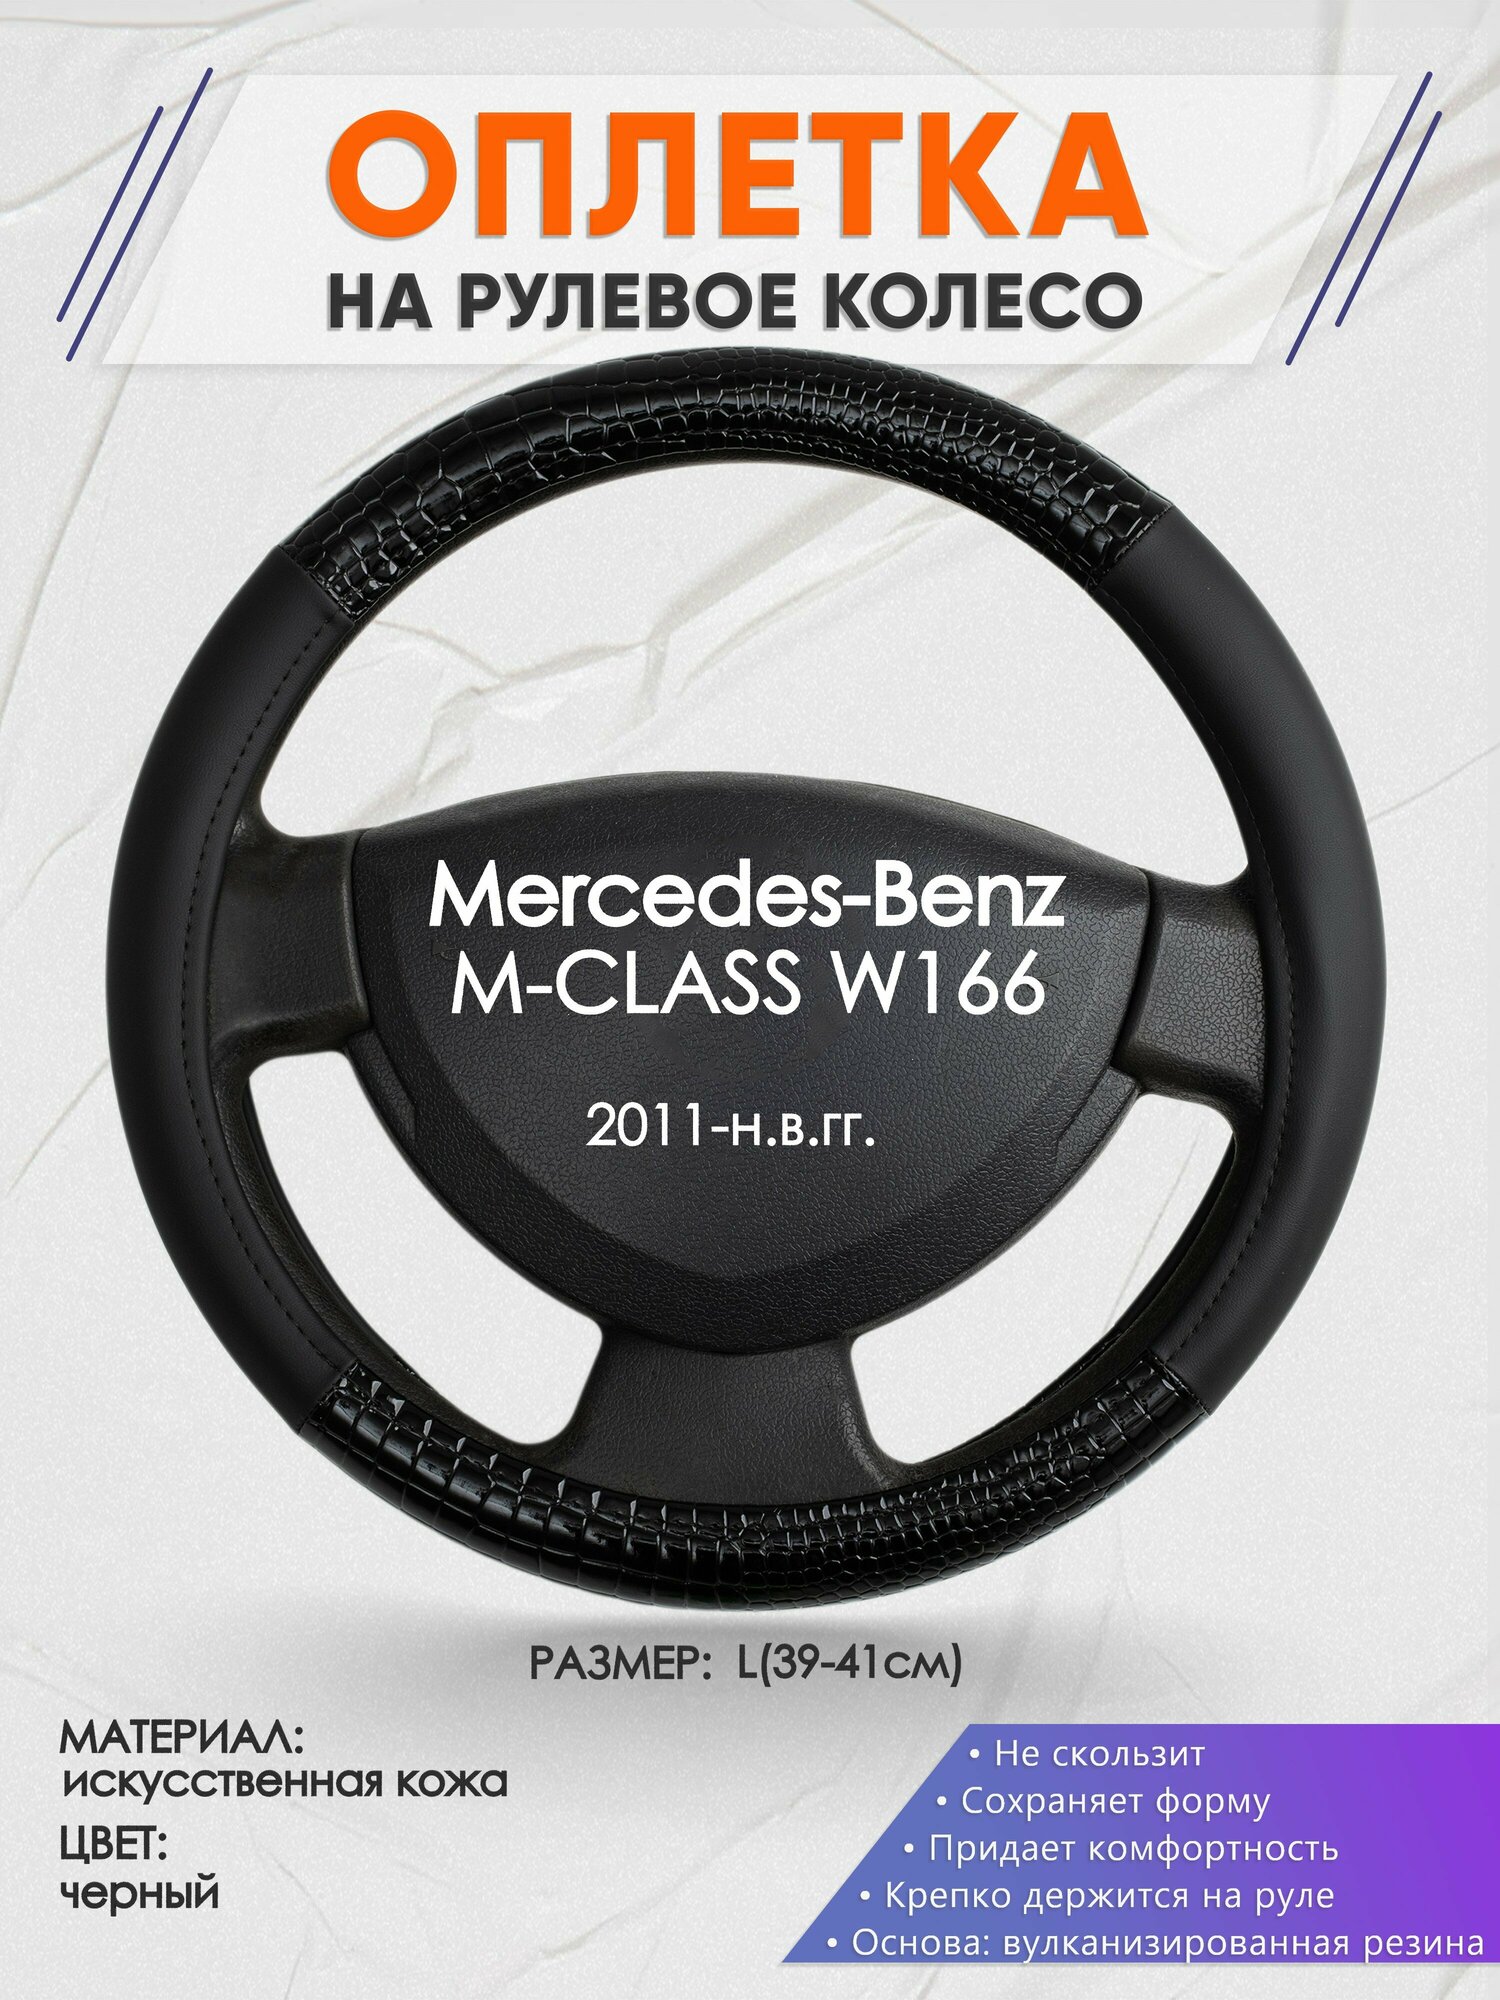 Оплетка на руль для Mercedes-Benz M-CLASS W166(Мерседес Бенц М Класс) 2011-н. в, L(39-41см), Искусственная кожа 83